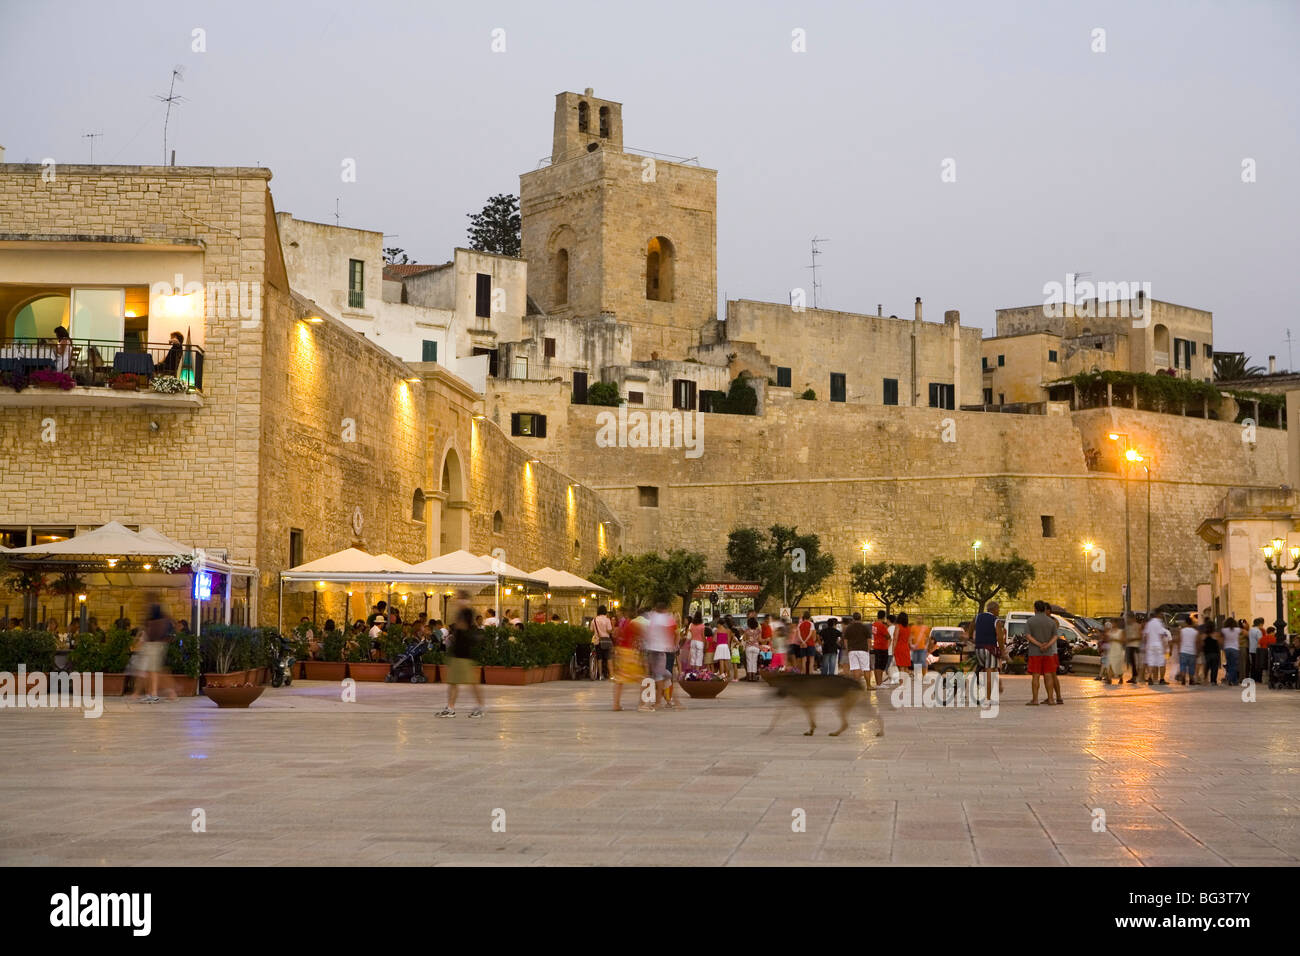 Old town, Otranto, Lecce province, Puglia, Italy, Europe Stock Photo